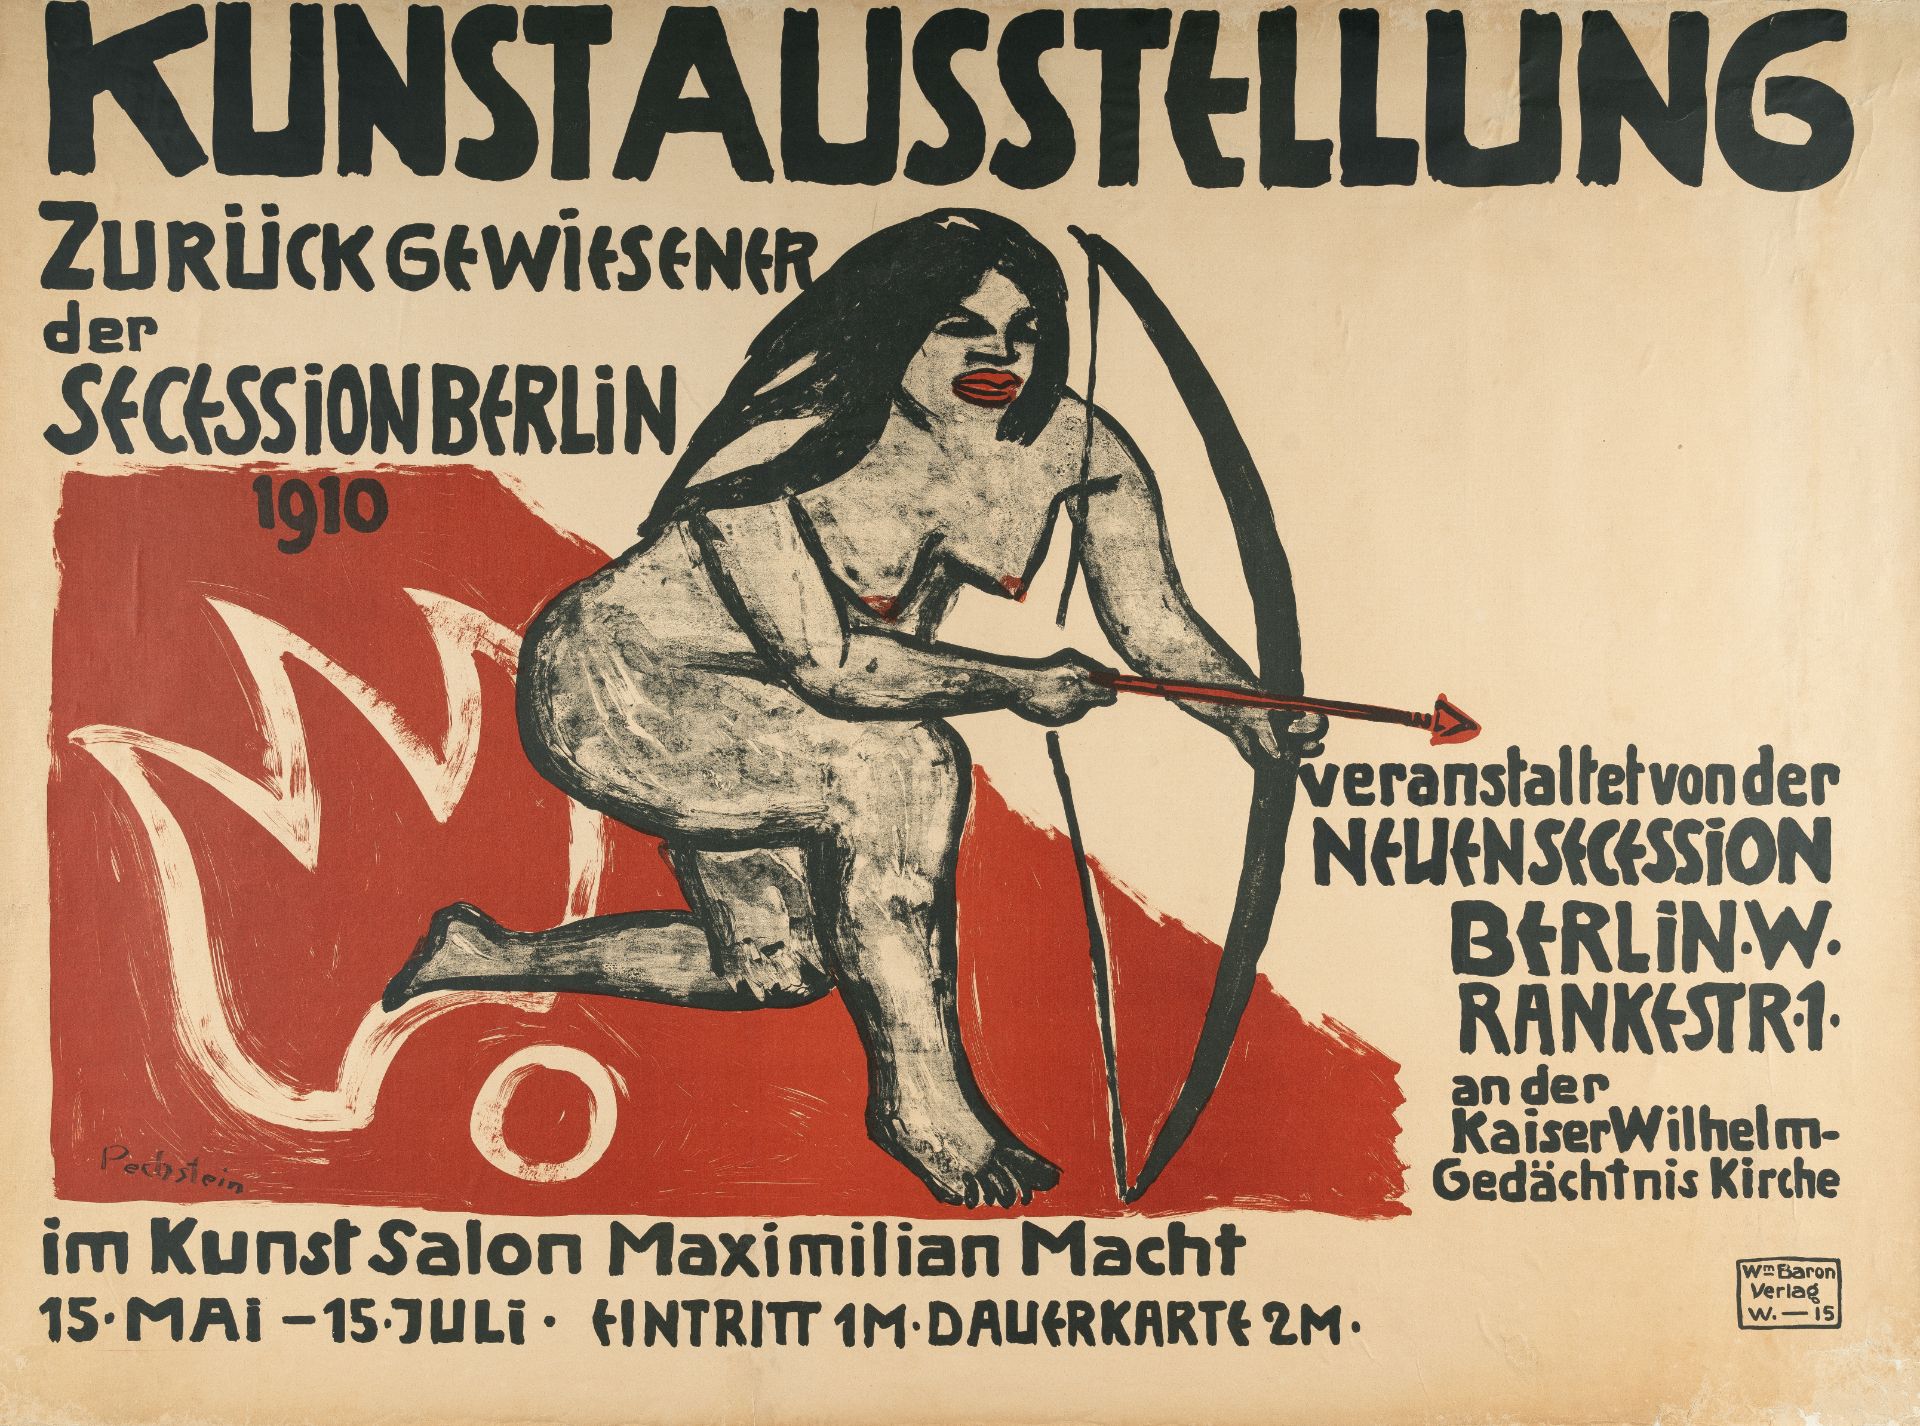 Hermann Max Pechstein (1881 Zwickau - Berlin 1955) – Kunstausstellung Zurückgewiesener der Secession